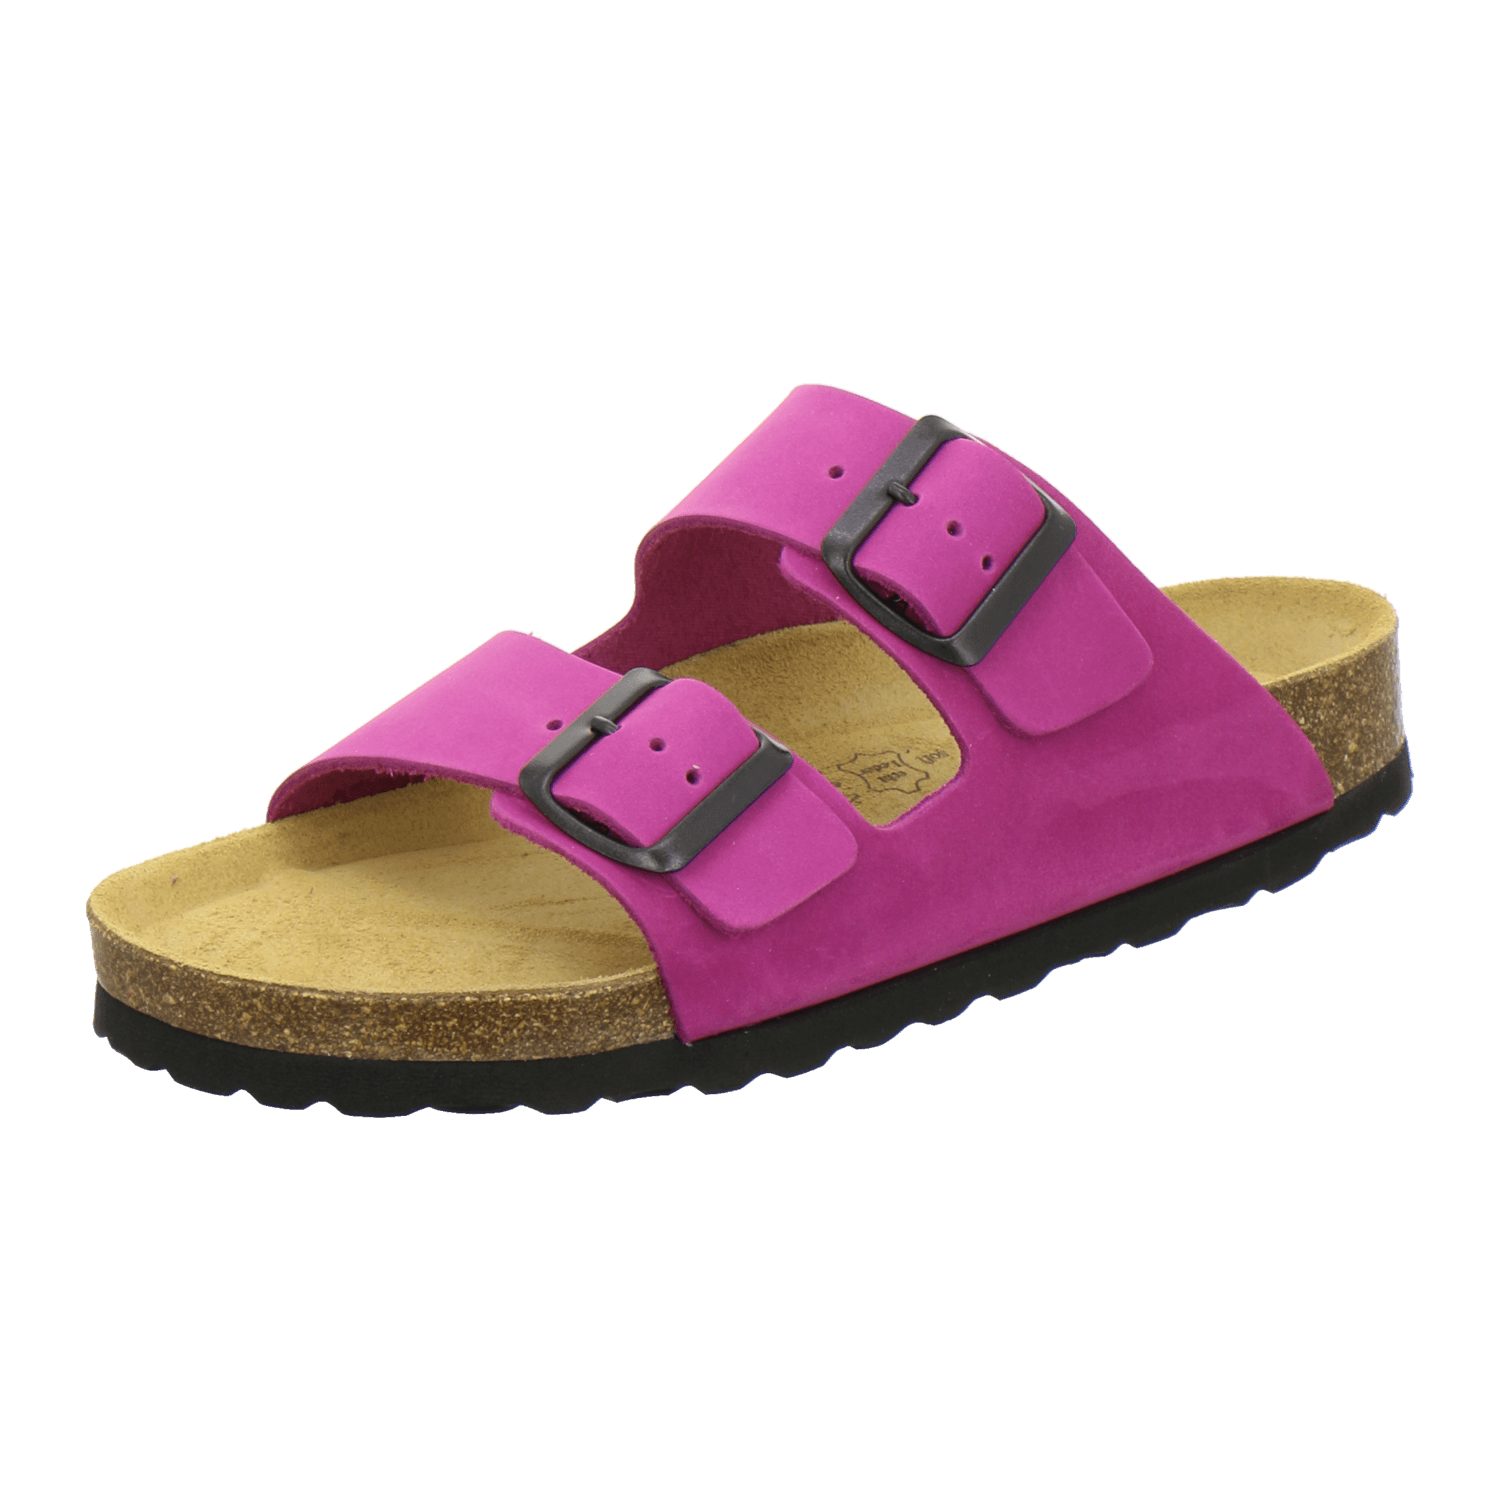 AFS-Schuhe 2100 Pantolette für Damen aus Leder mit Fussbett, Made in Germany pink Nubuk